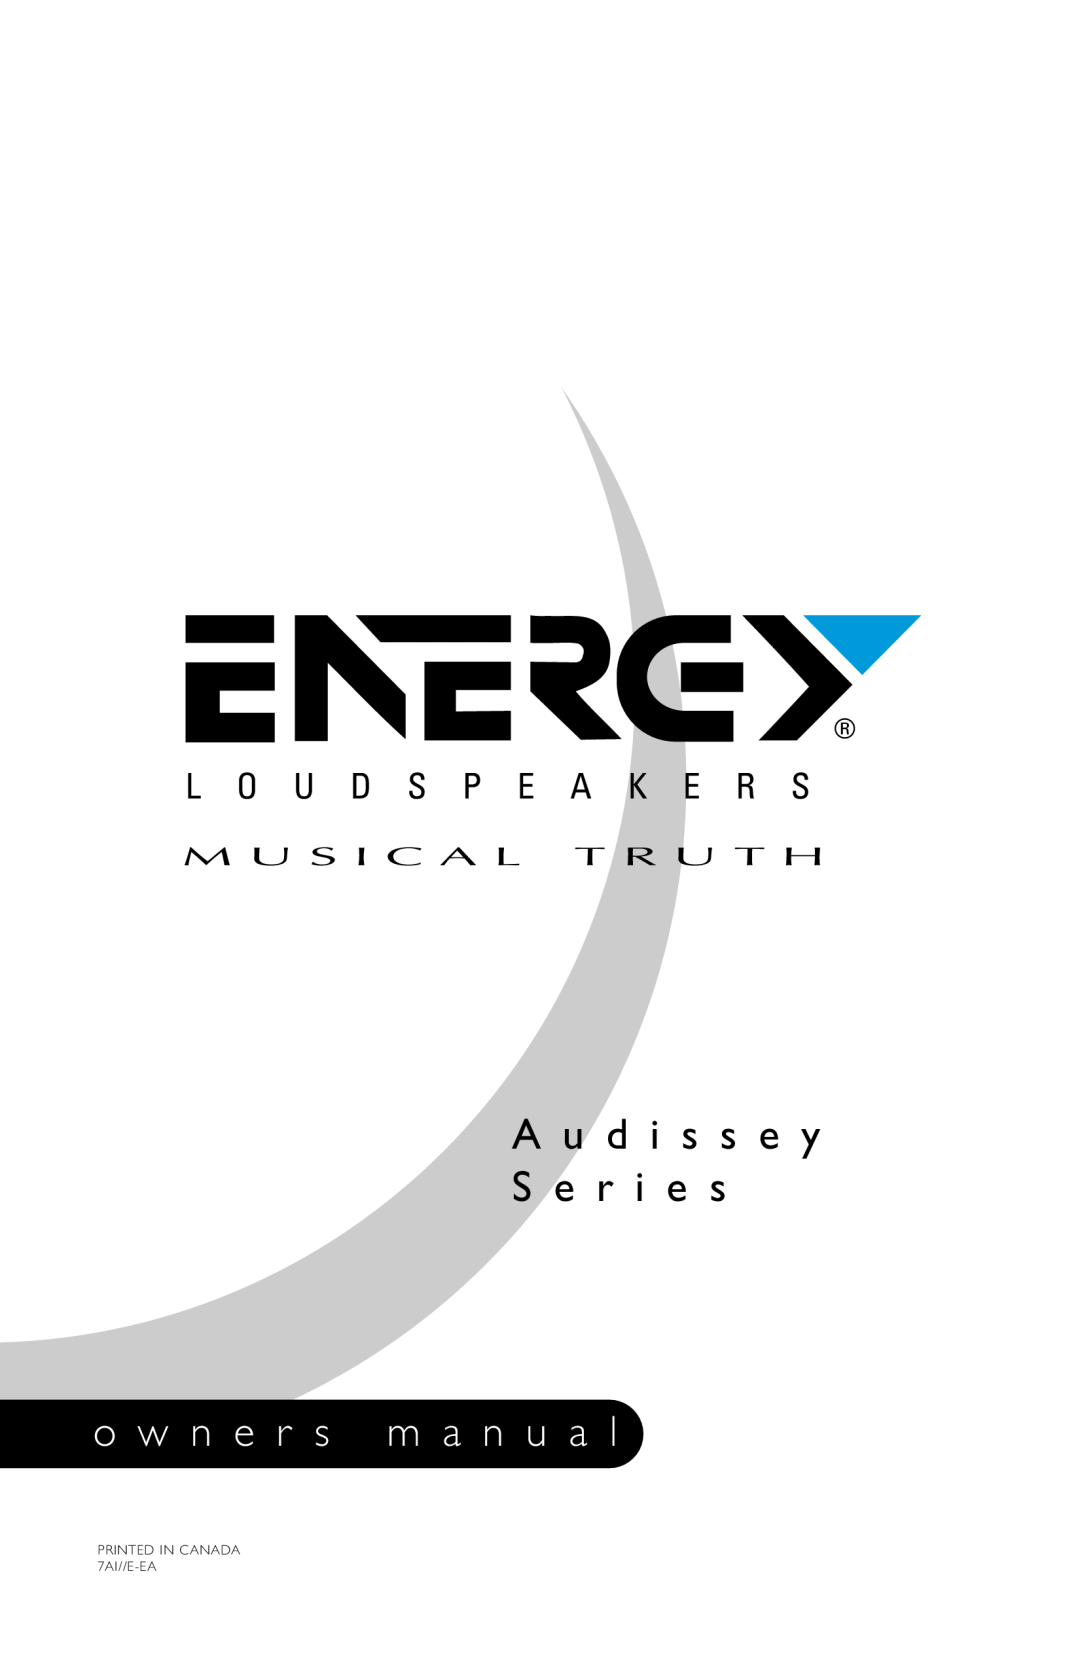 Energy Speaker Systems Audissey Series owner manual M U S I C A L T R U T H, A u d i s s e y S e r i e s 